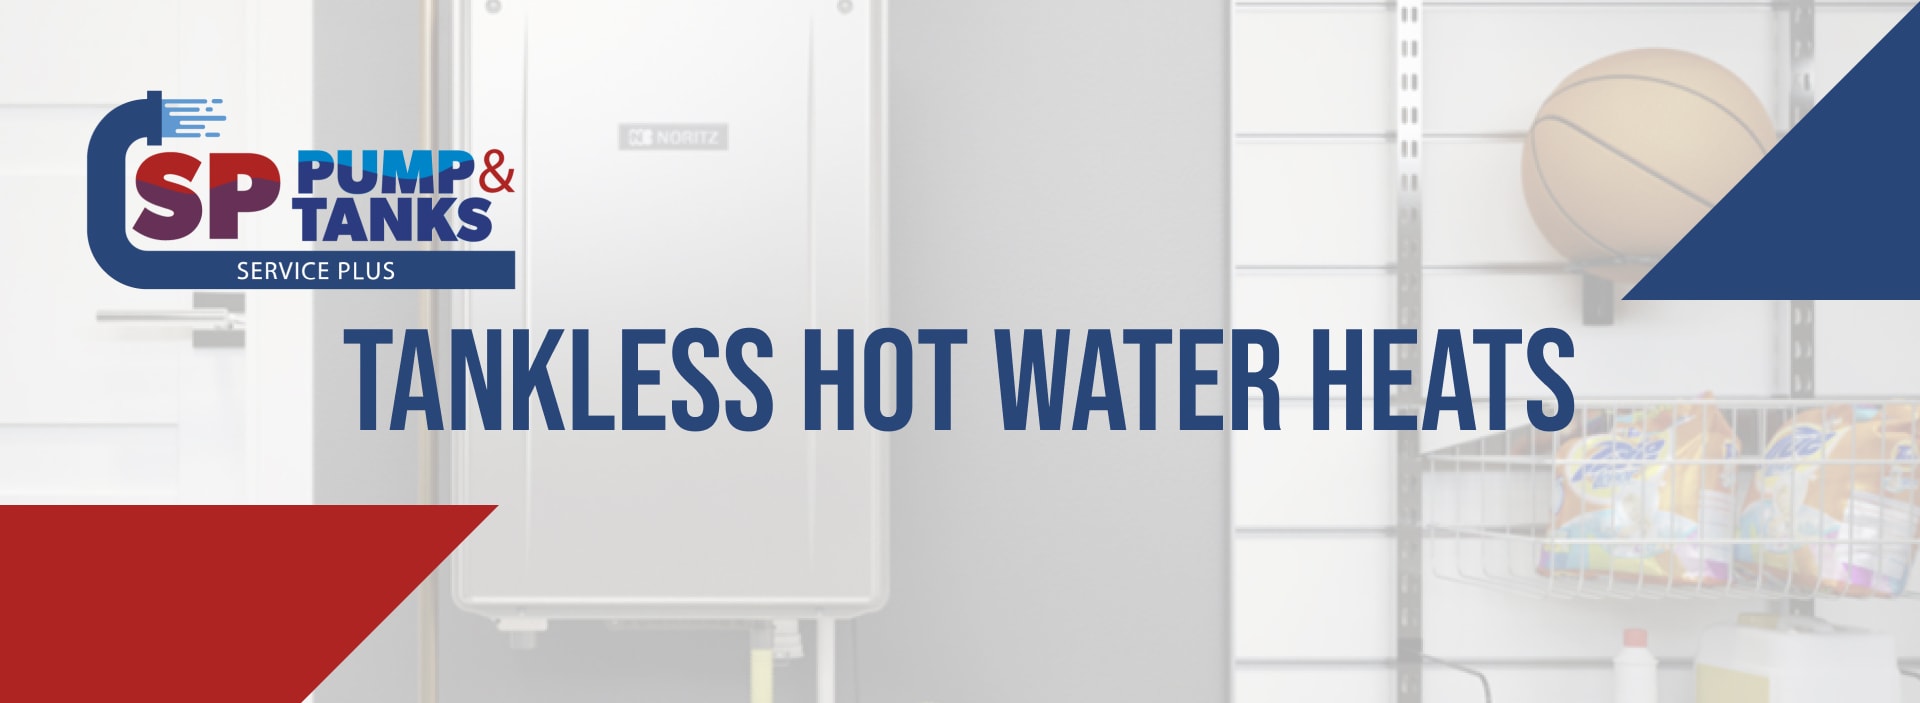 Tankless Hot Water Heats